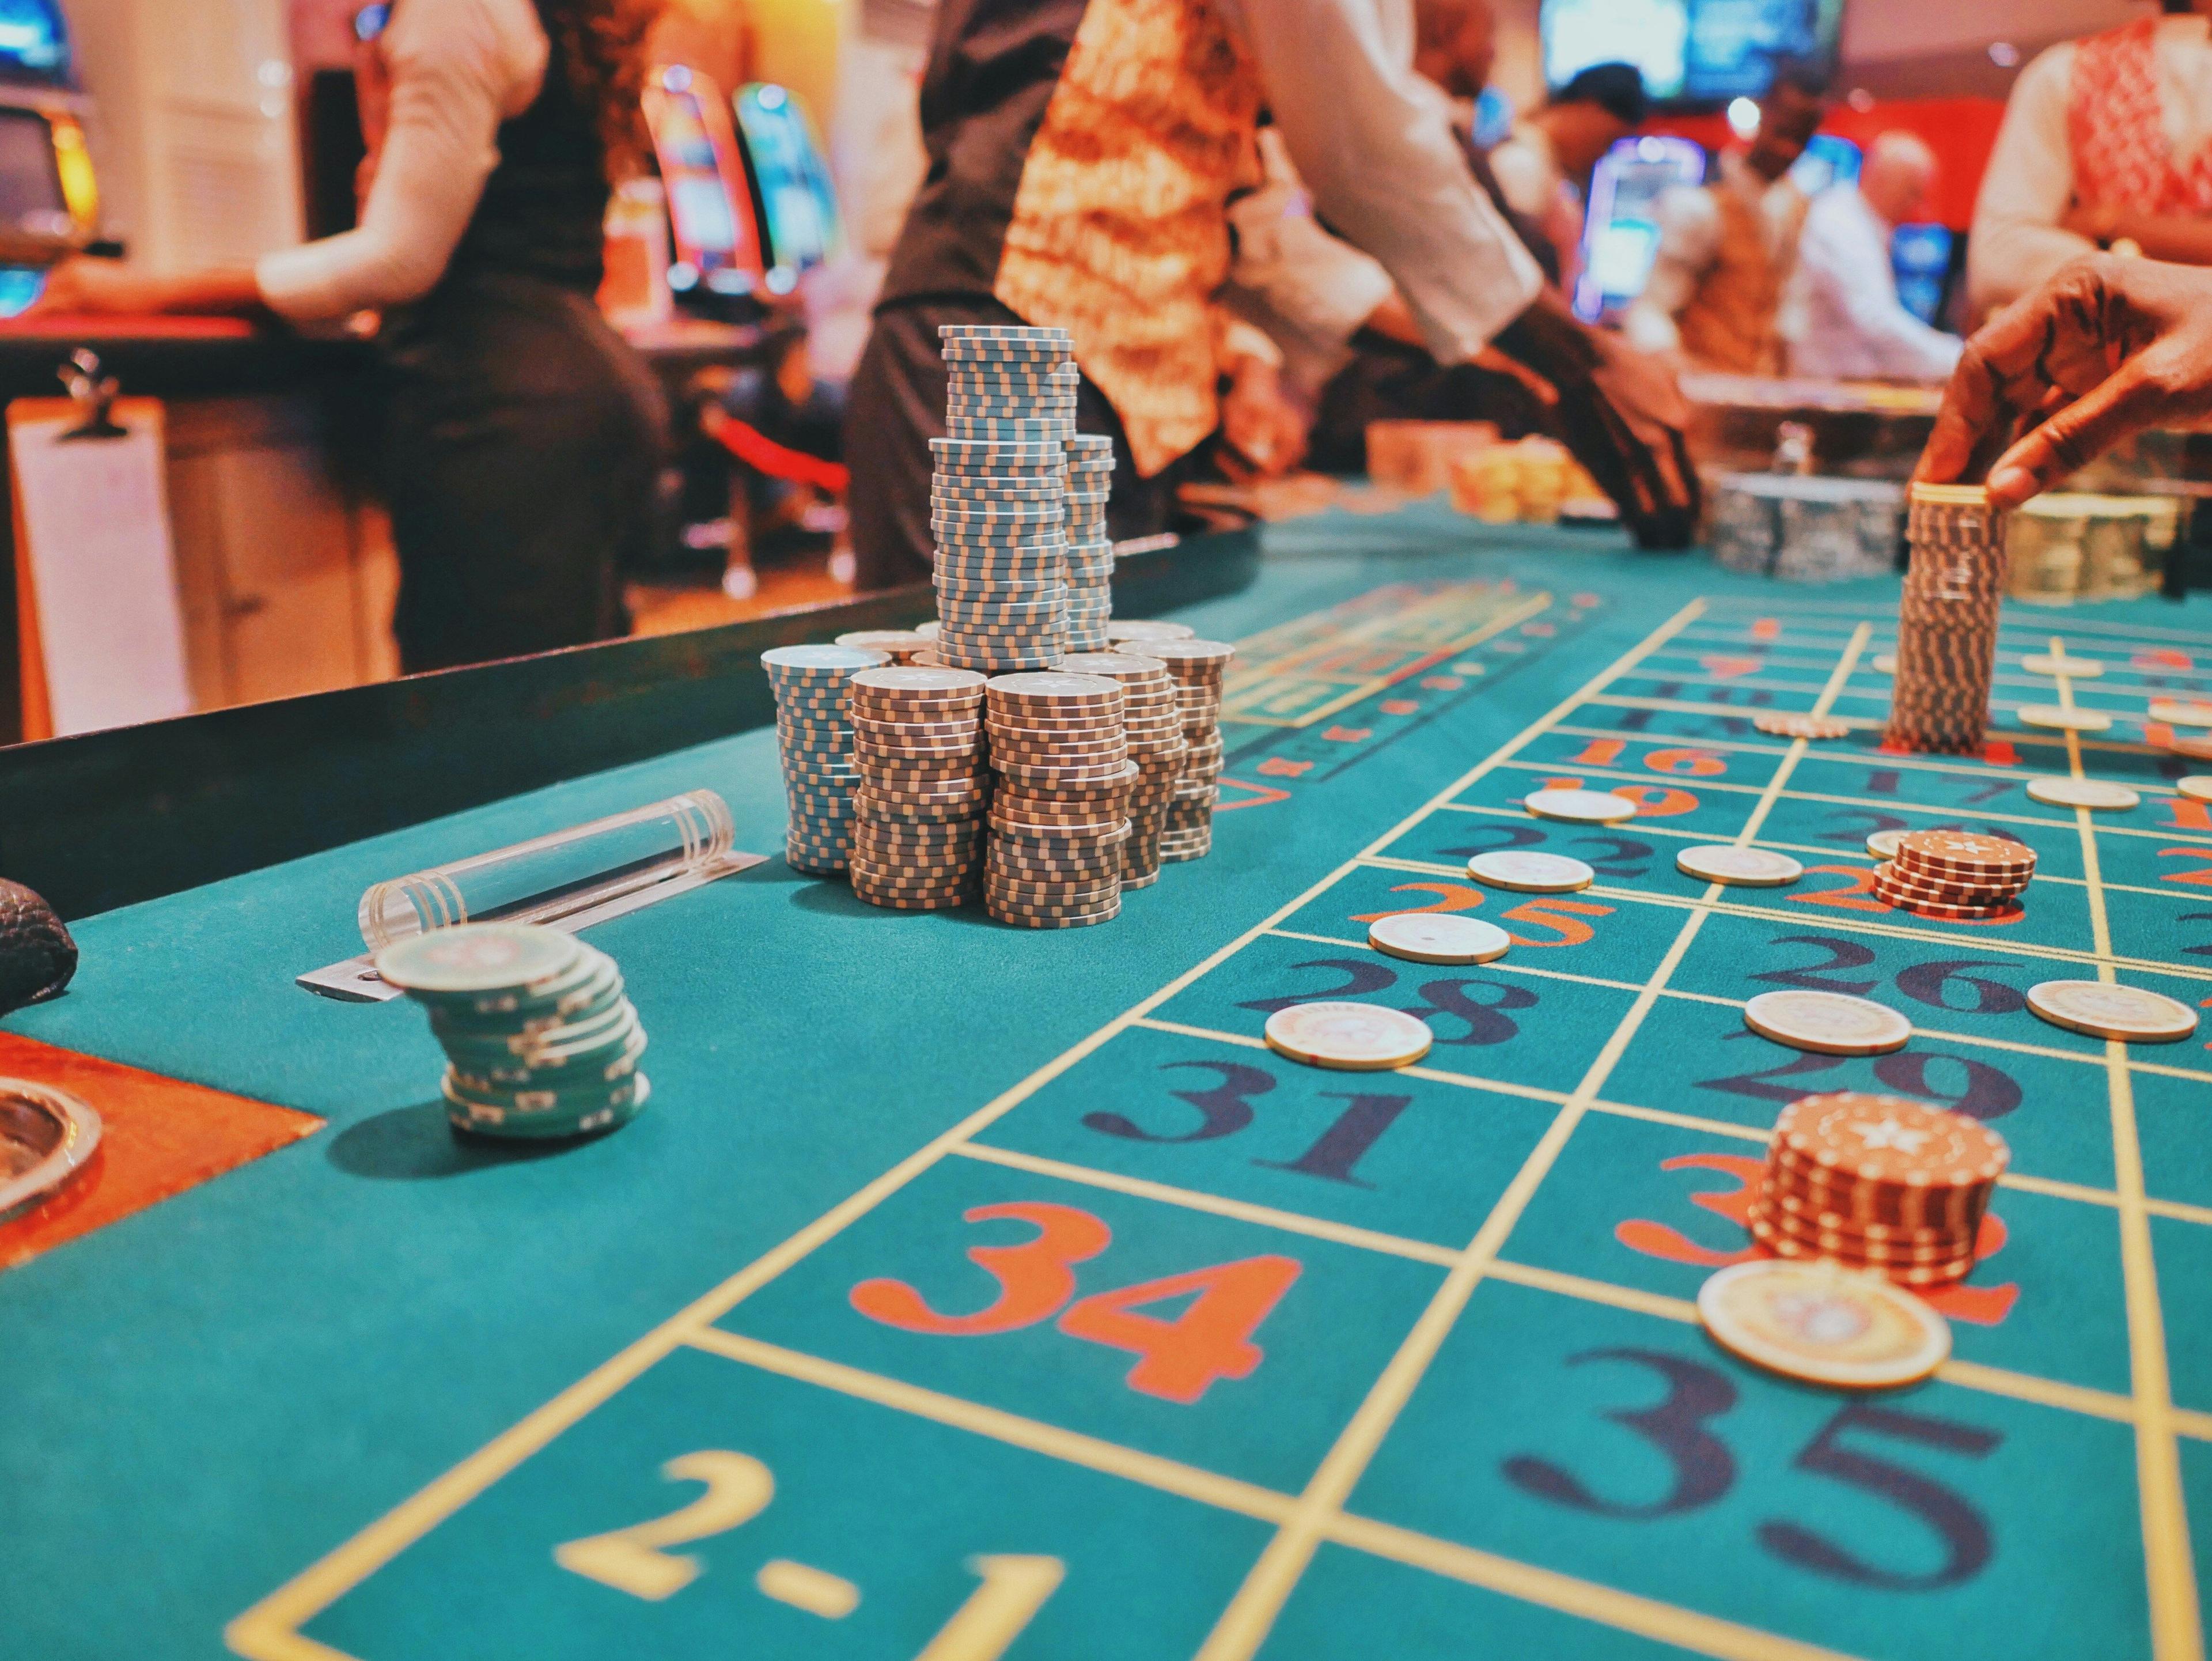 Novos casinos: 5 boas razões para descobrir novos casinos online